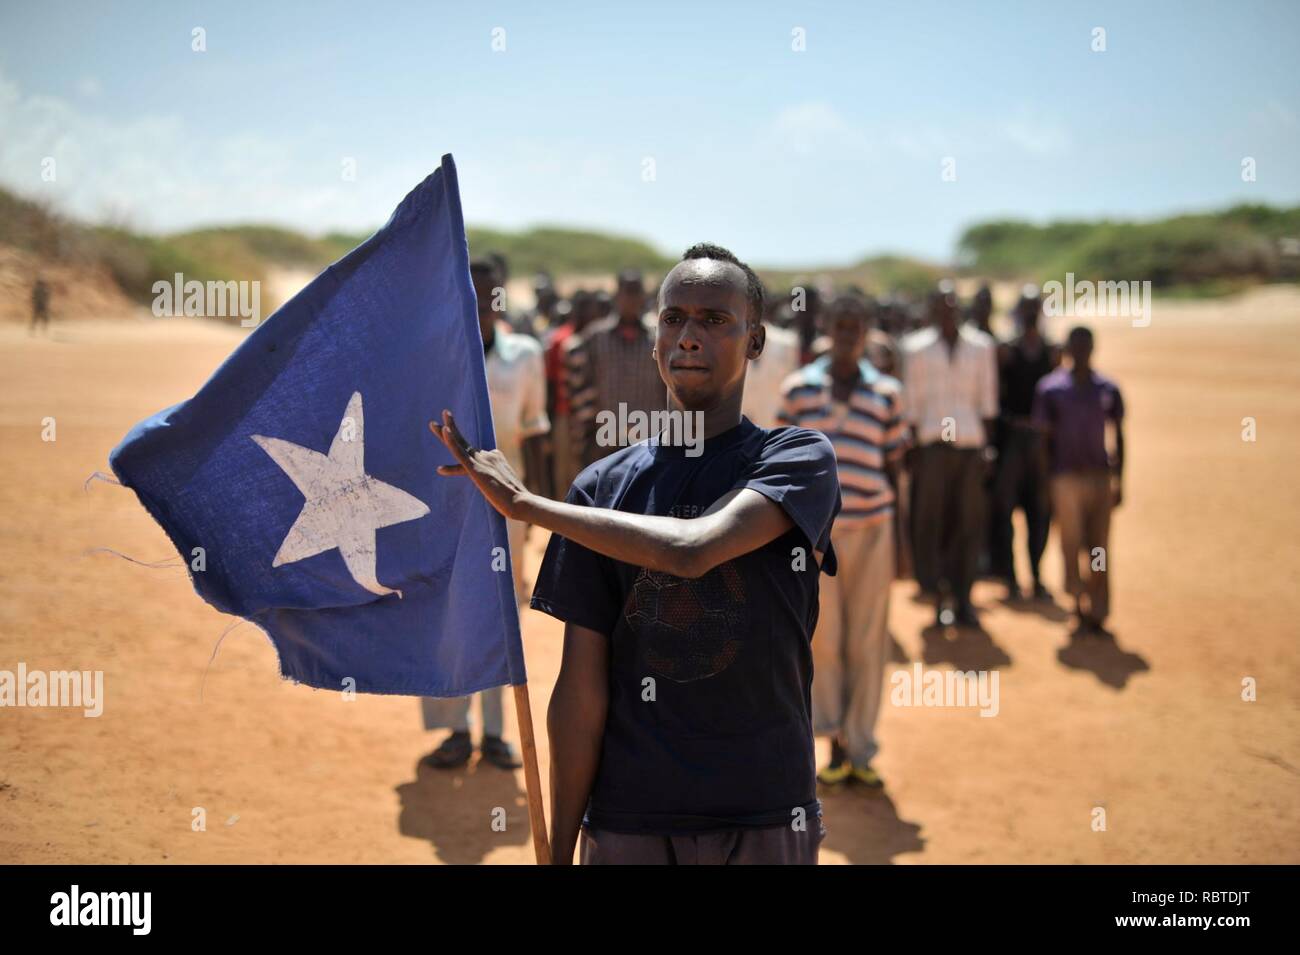 Ein junger Mann trägt die somalische Fahne während der Führung einer Gruppe von Soldaten, die während einer Demonstration durch einen lokalen Milizen, gebildet, um die Sicherheit in der Nähe von Marka, Somalia, am 30. April. AU UN (14077872251). Stockfoto